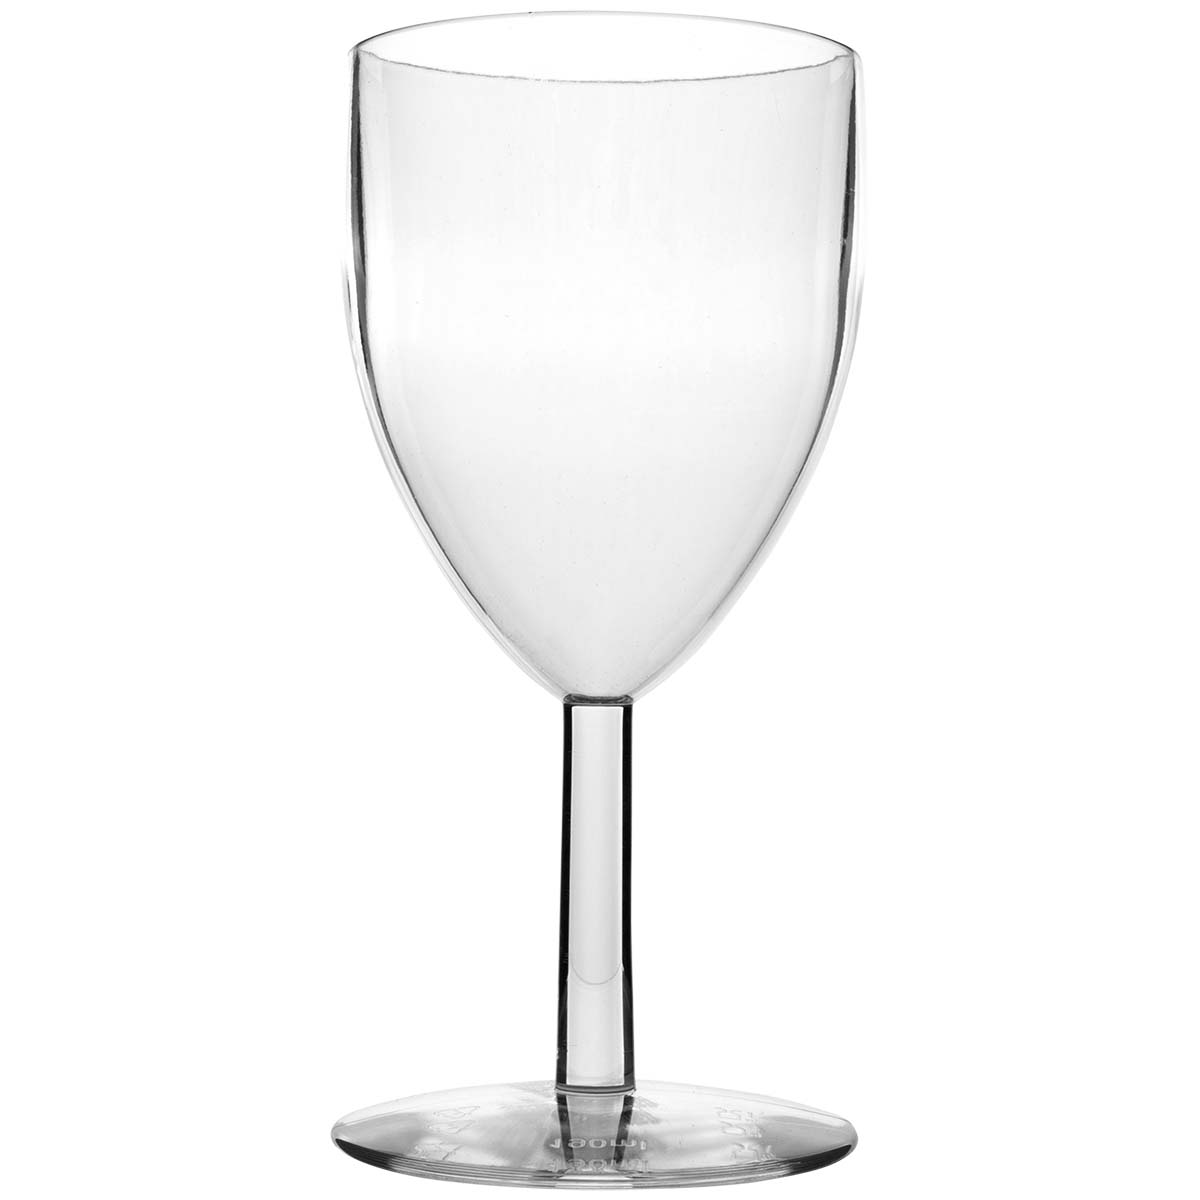 6101493 Een extra stevig wijnglas. Gemaakt van 100% polycarbonaat. Hierdoor is het glas vrijwel onbreekbaar, lichtgewicht en kraswerend. Ook is dit glas vaatwasmachinebestendig.